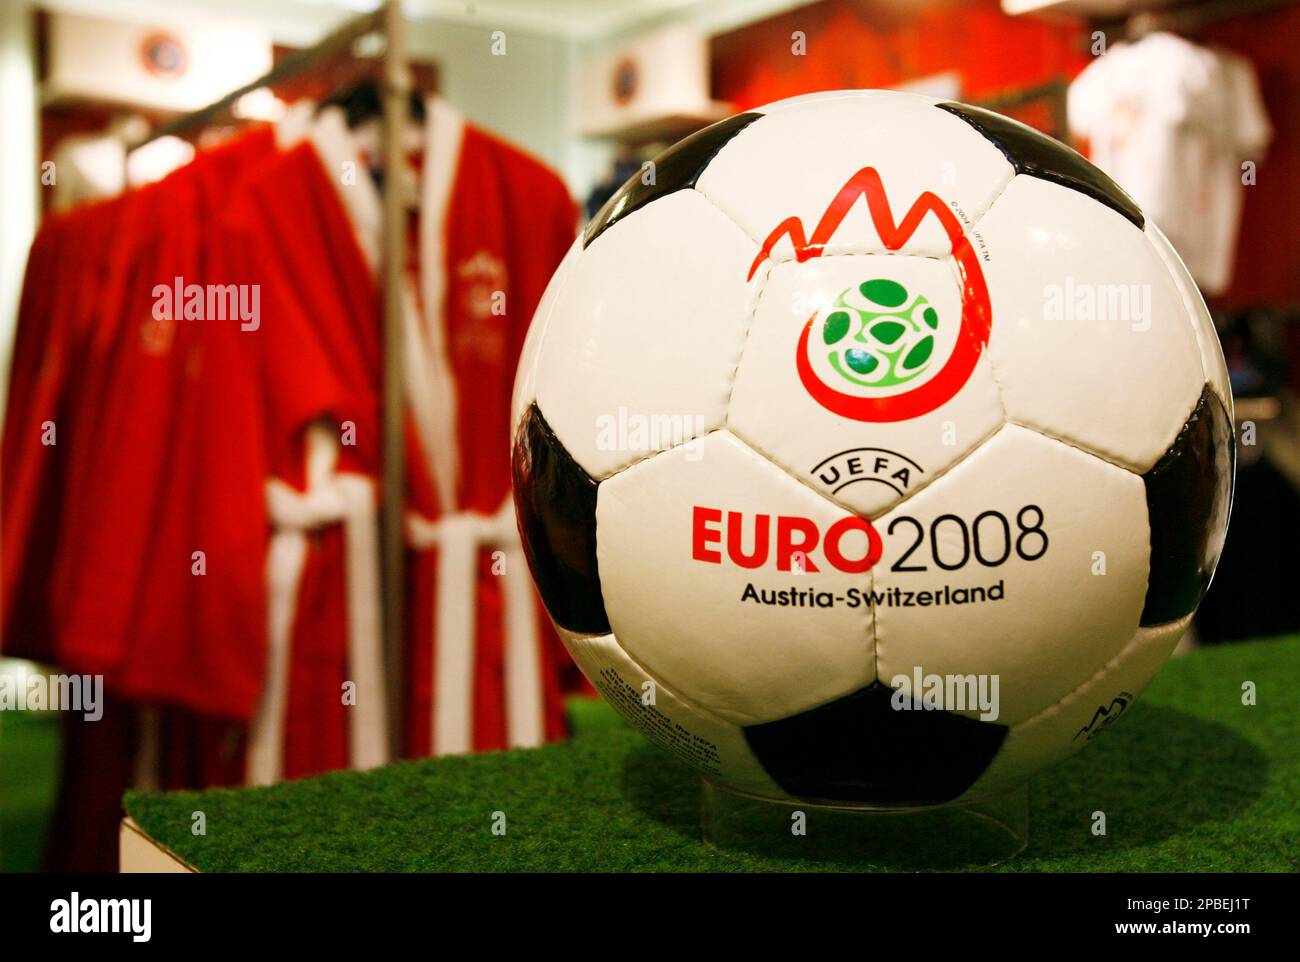 Diverse Merchandising-Gegenstaende fuer die Fussball Europameisterschaft  EURO2008 in Oesterreich und der Schweiz wie Kleider und Baelle stehen am  Dienstag 5. Juni 2007, in der Manor Filliale an der Zuercher  Bahnhofsstrasse zum Verkauf